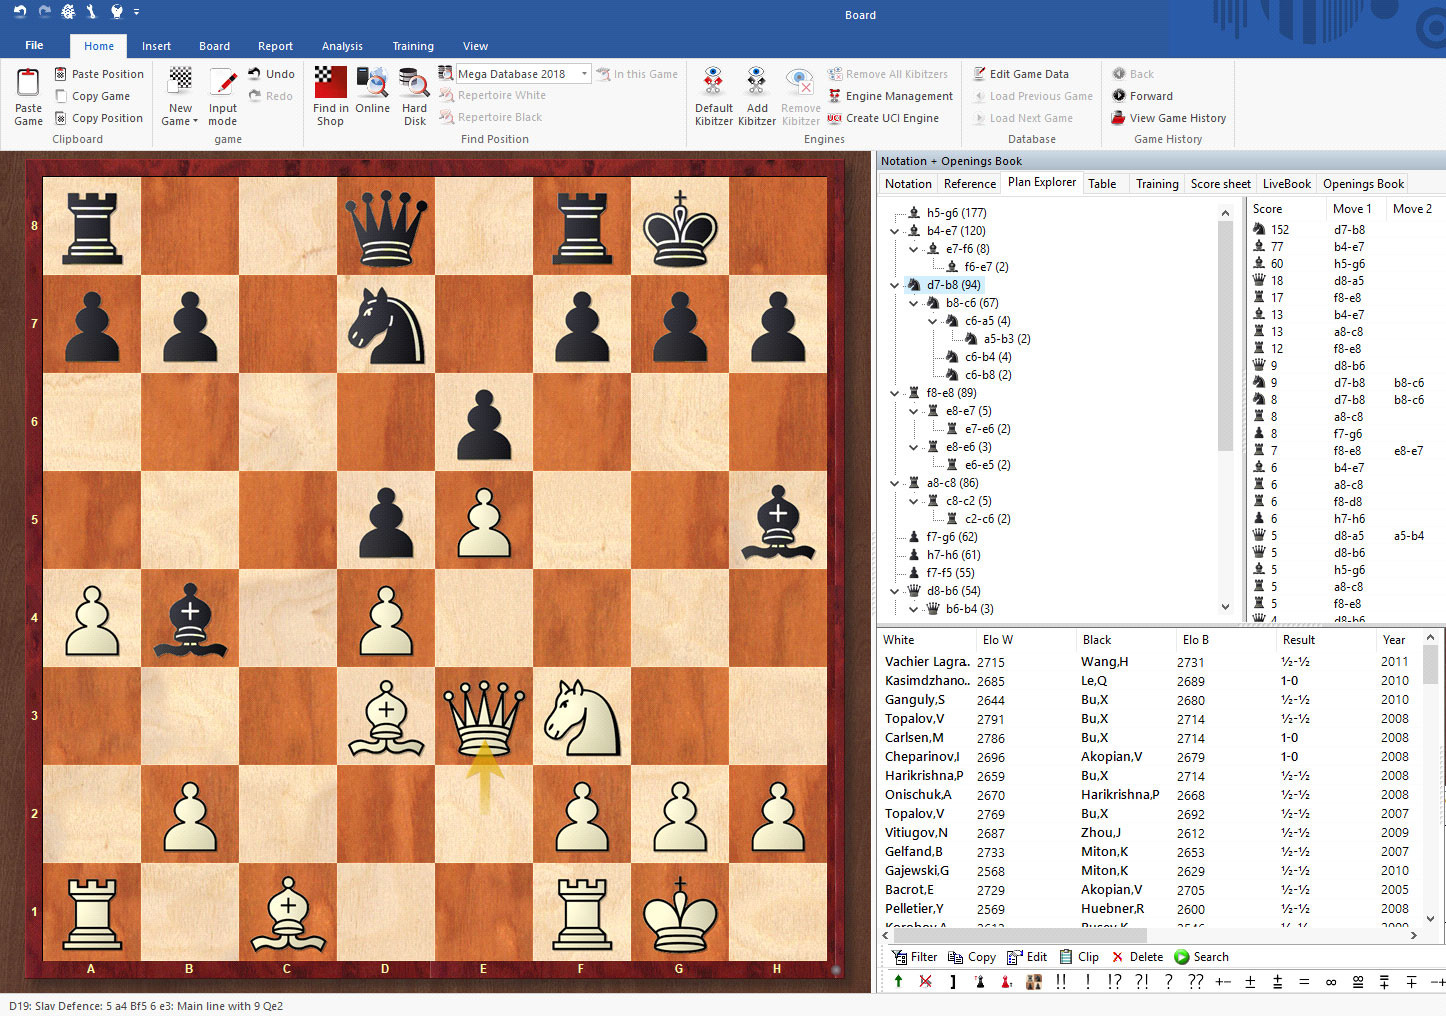 ChessBase 17 Steam Edition on Steam